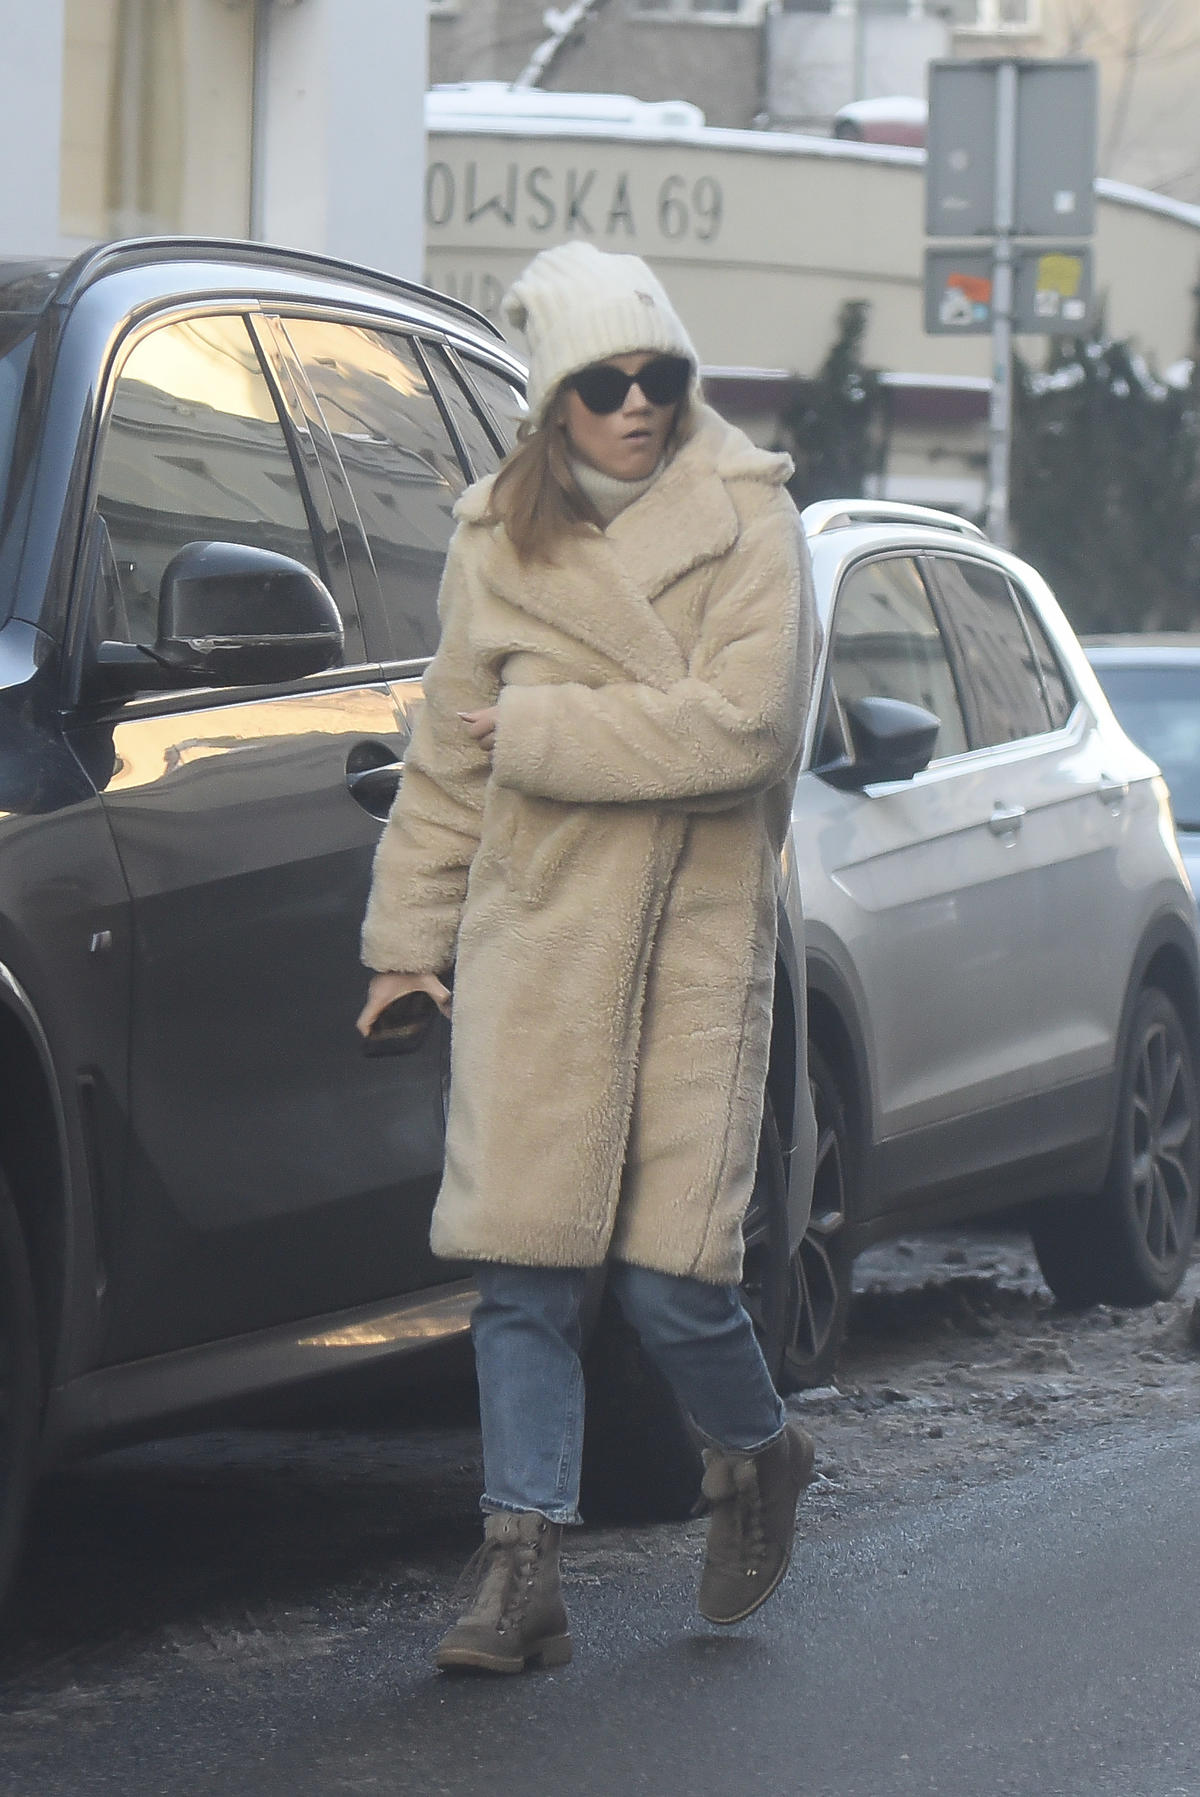 Agnieszka Kaczorowska wychodzi z auta w ciepłym, beżowym płaszczu 